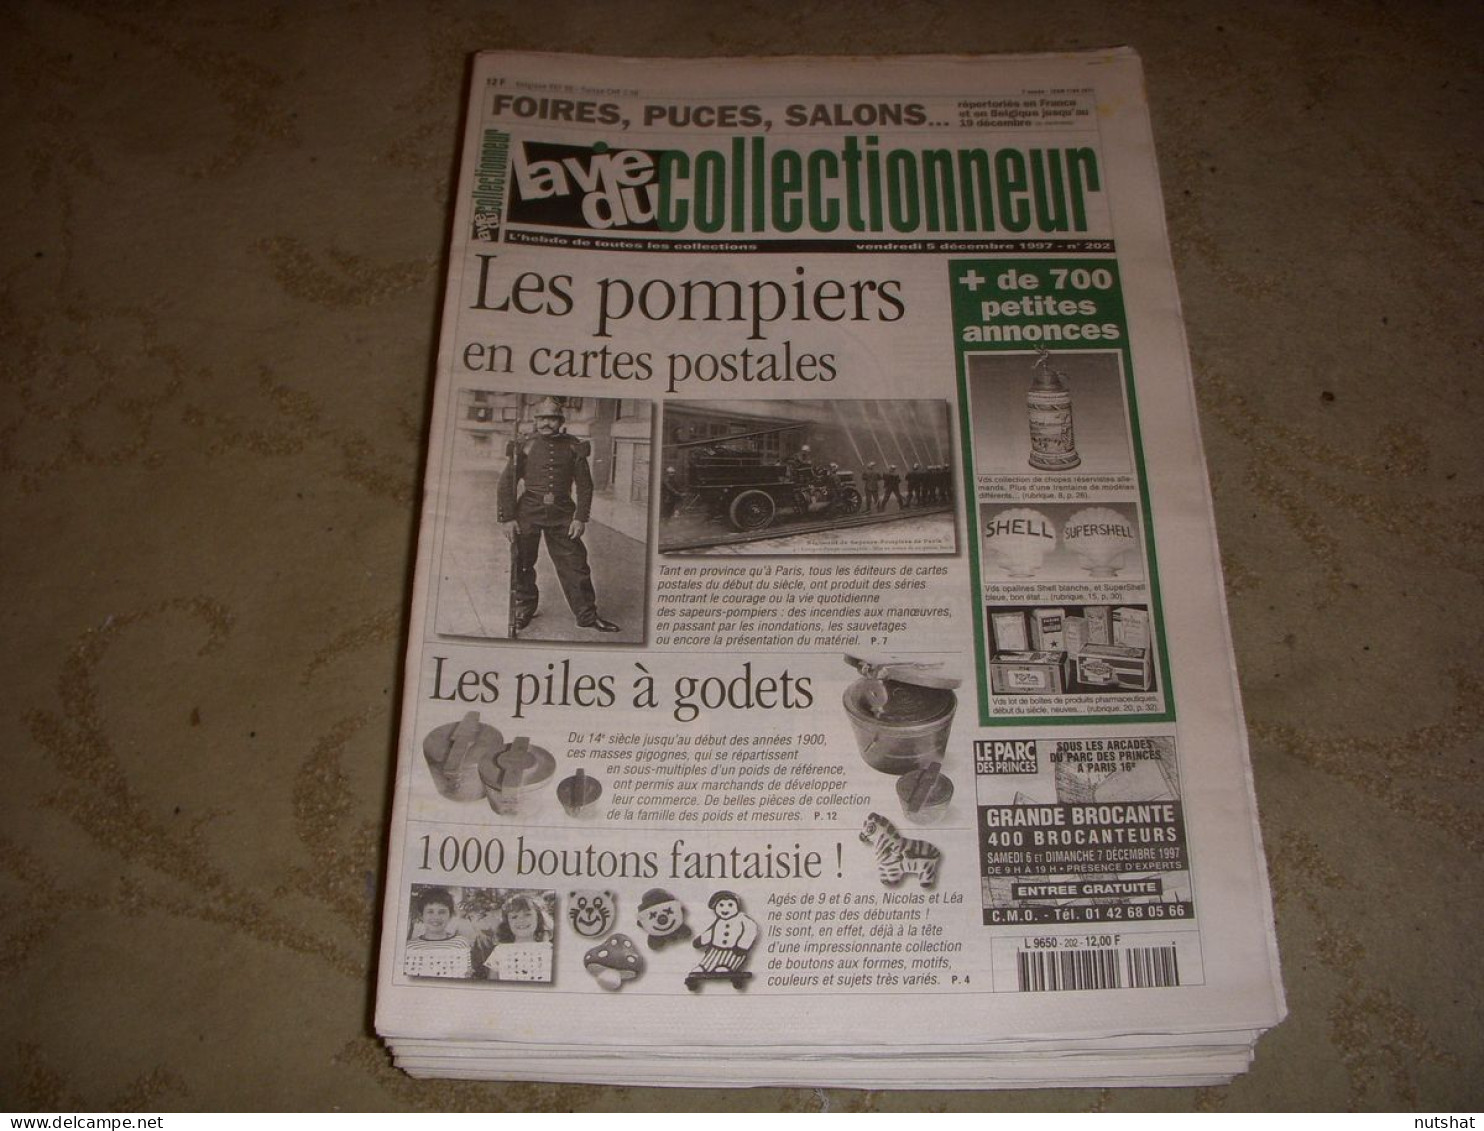 LVC VIE Du COLLECTIONNEUR 202 05.12.1997 POMPIER En CP BOUTON FANTAISIE STYLO  - Trödler & Sammler